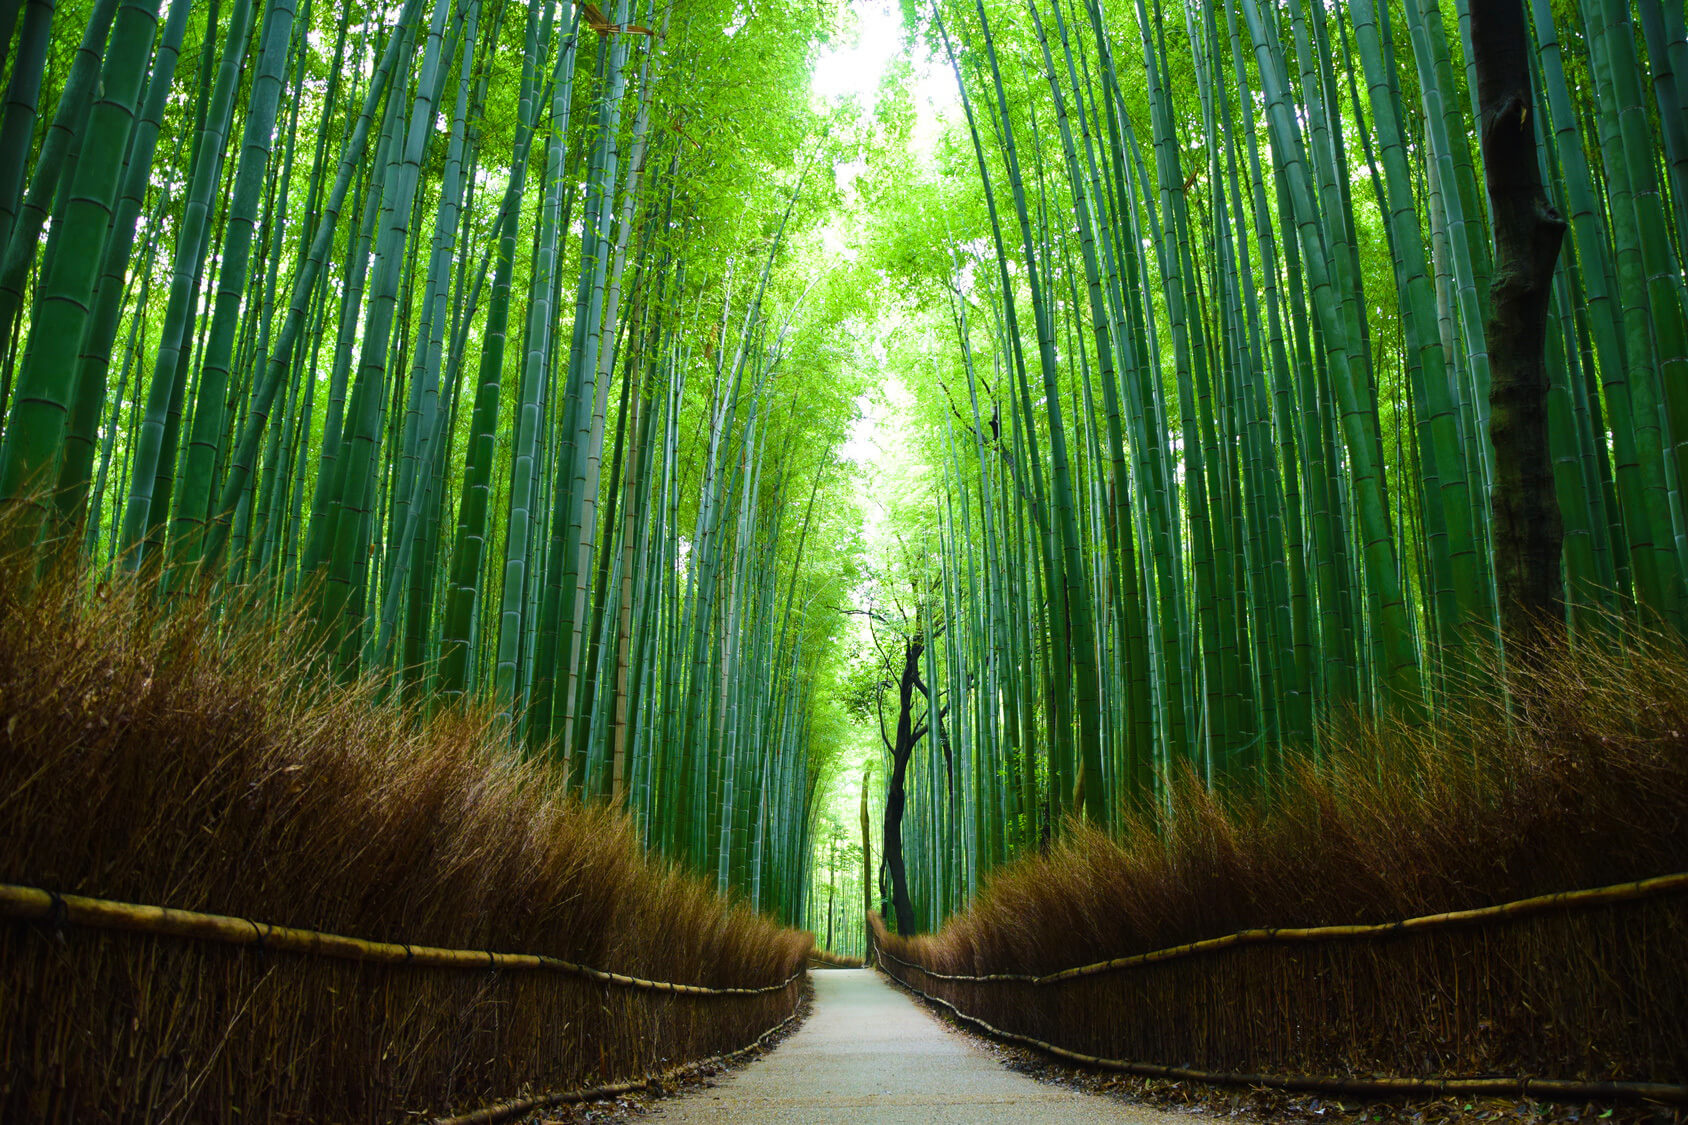 Sites Naturels à découvrir dans le monde - La forêt de bambou Arashiyama, Japon